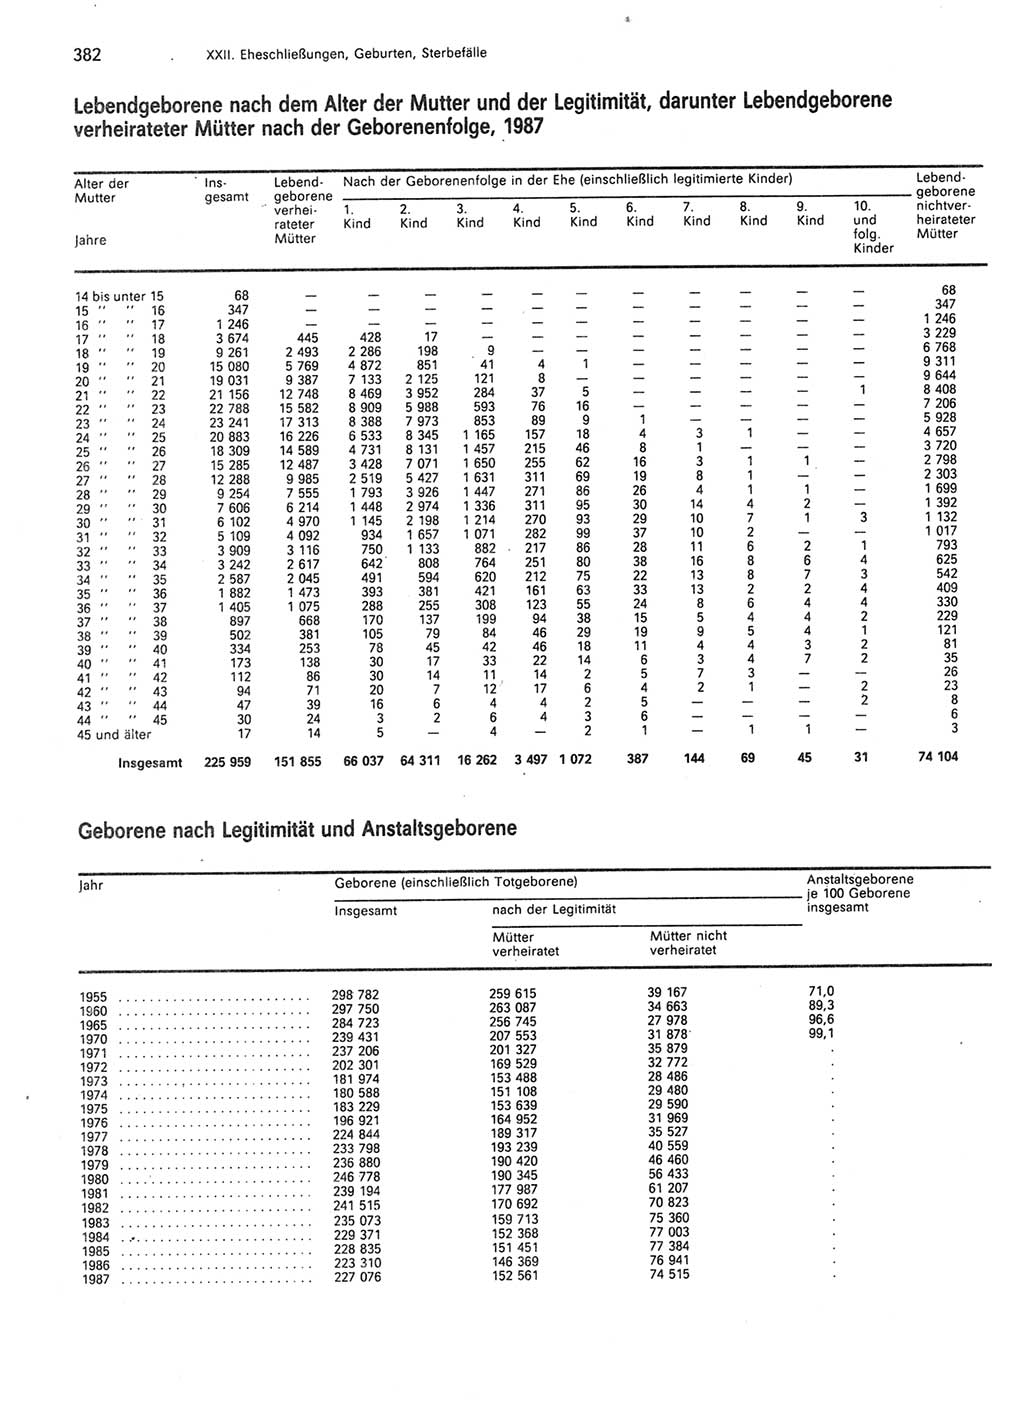 Statistisches Jahrbuch der Deutschen Demokratischen Republik (DDR) 1989, Seite 382 (Stat. Jb. DDR 1989, S. 382)